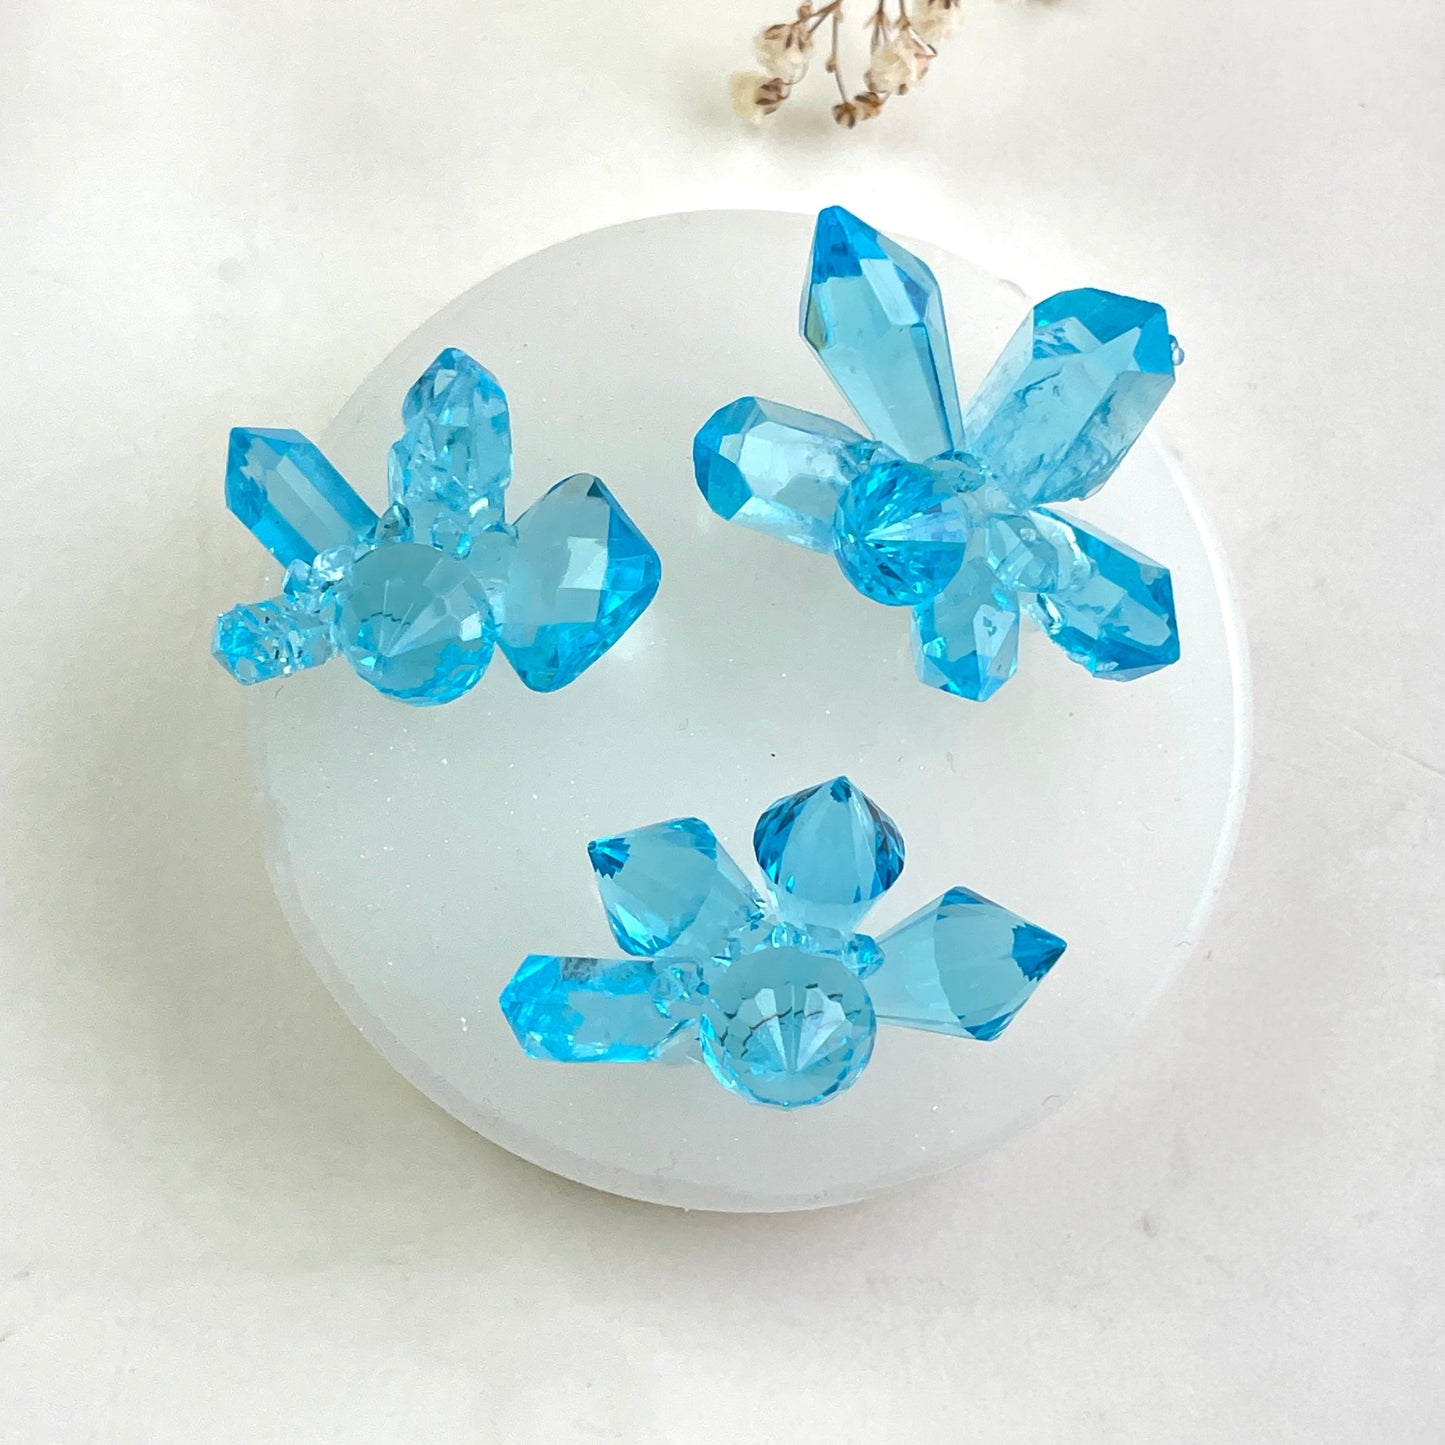 Kreieren Sie atemberaubende Kunstharzkunst mit der Silikonform „3 kleine Kristalle“.